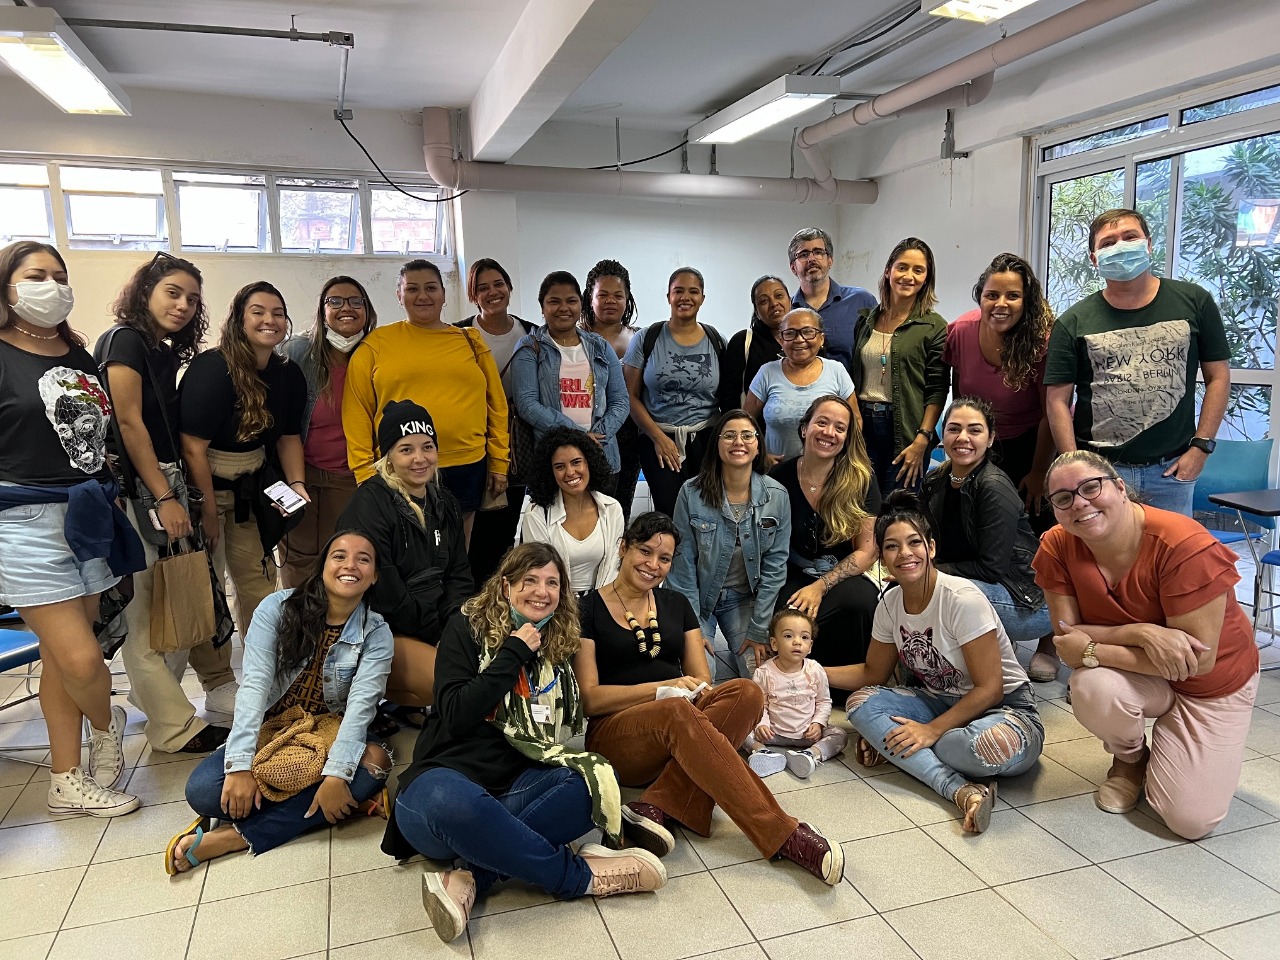 Moradoras da Rocinha recebem formação em redes sociais para alavancar pequenos negócios